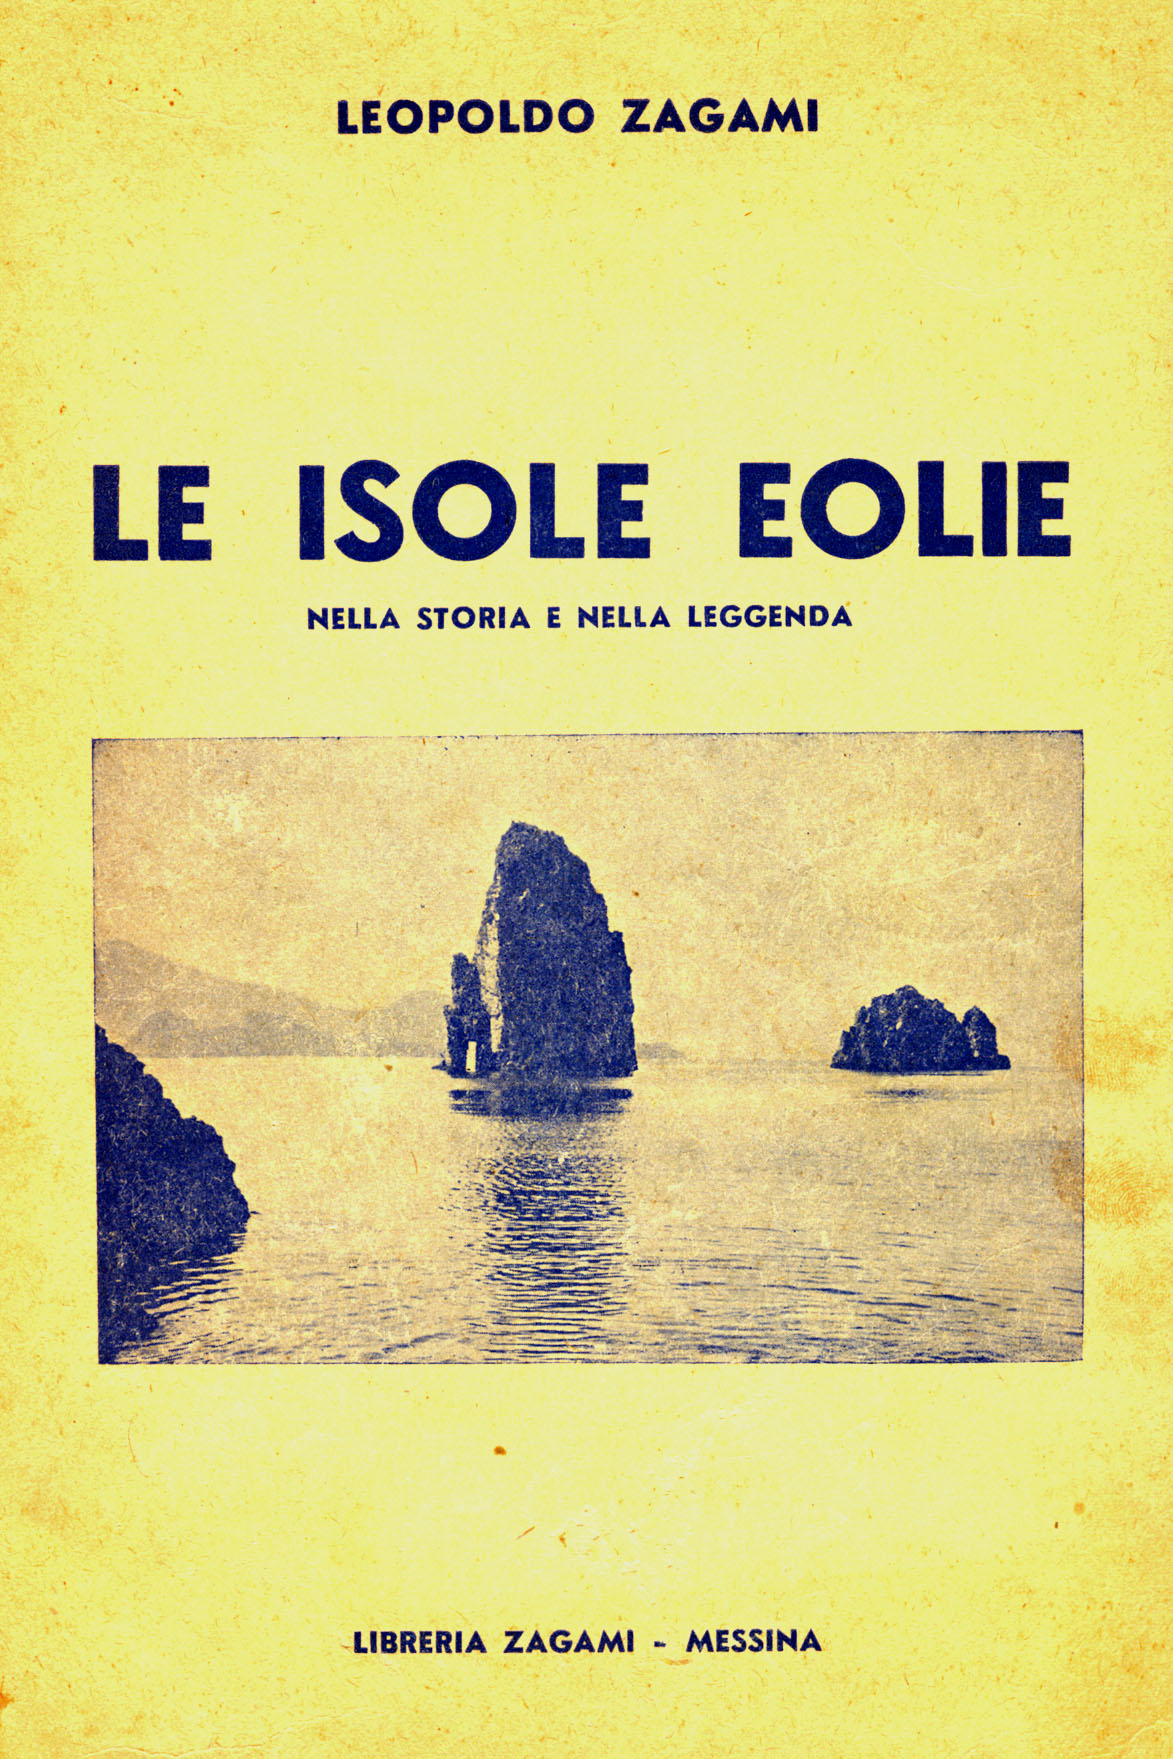 Leopoldo Zagami, Le isole eolie, 2° edizione (1950)